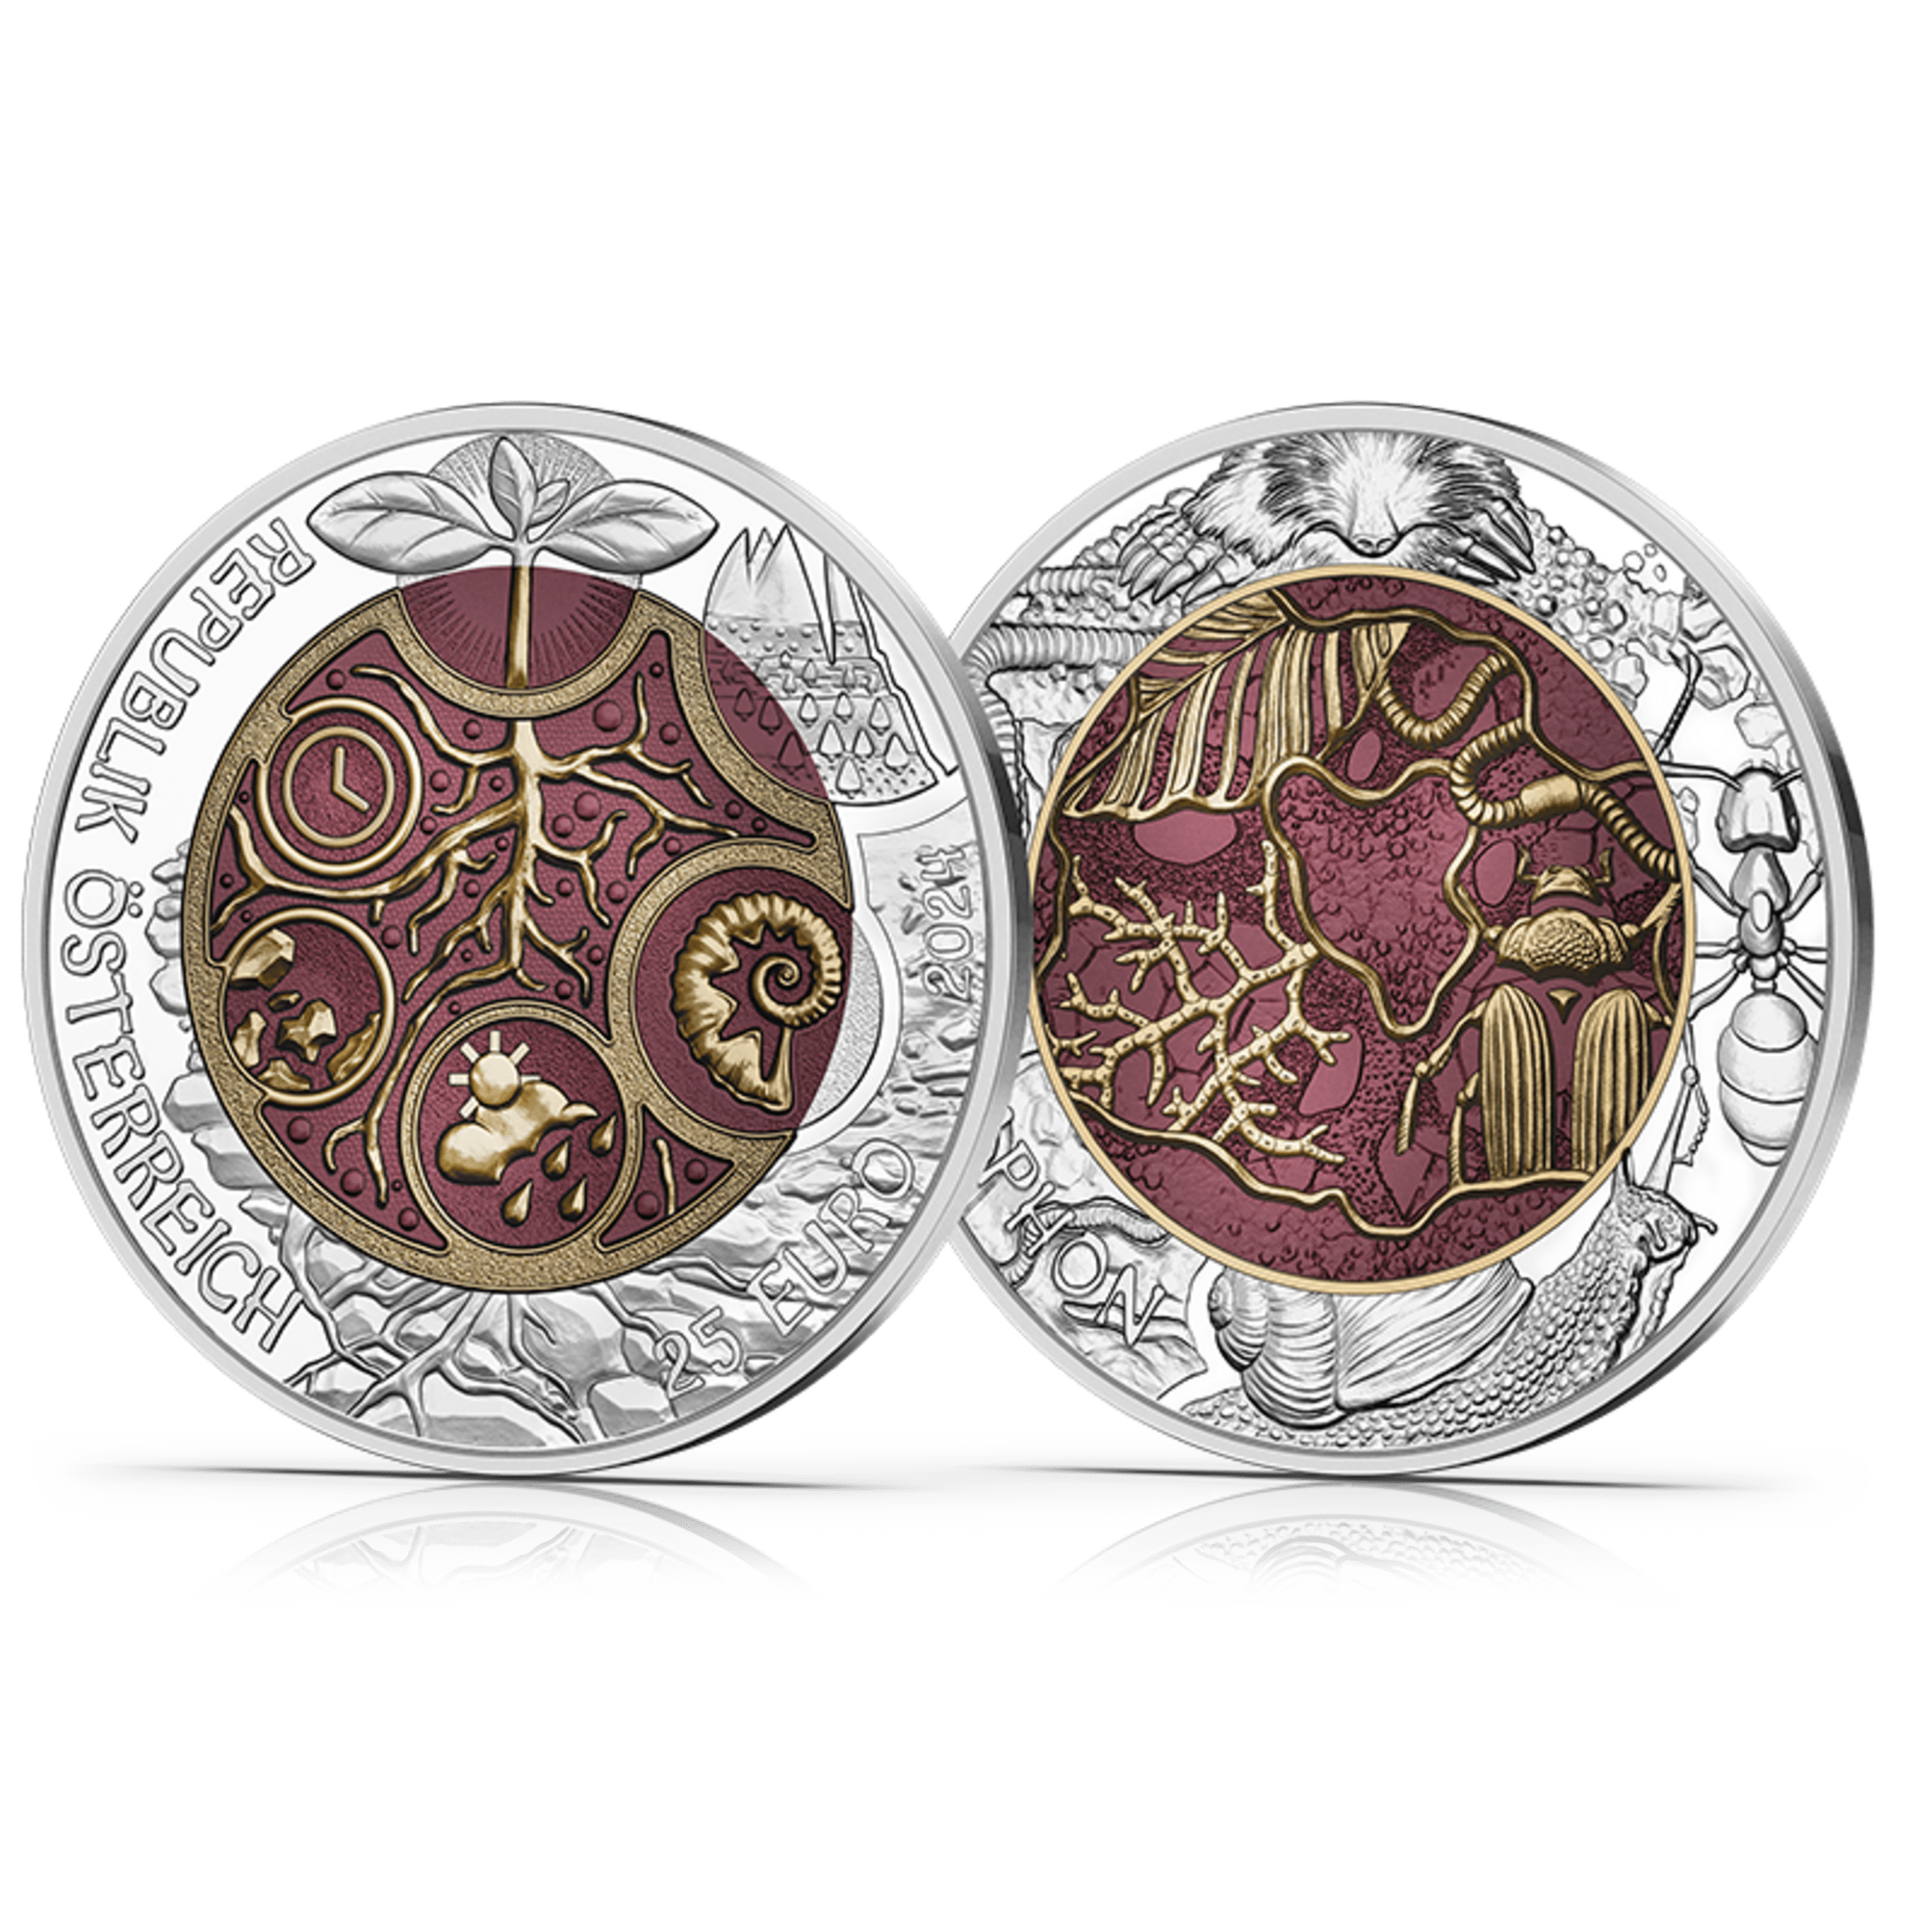 25-Euro-Münze Edaphon Vorderseiten und Rückseite